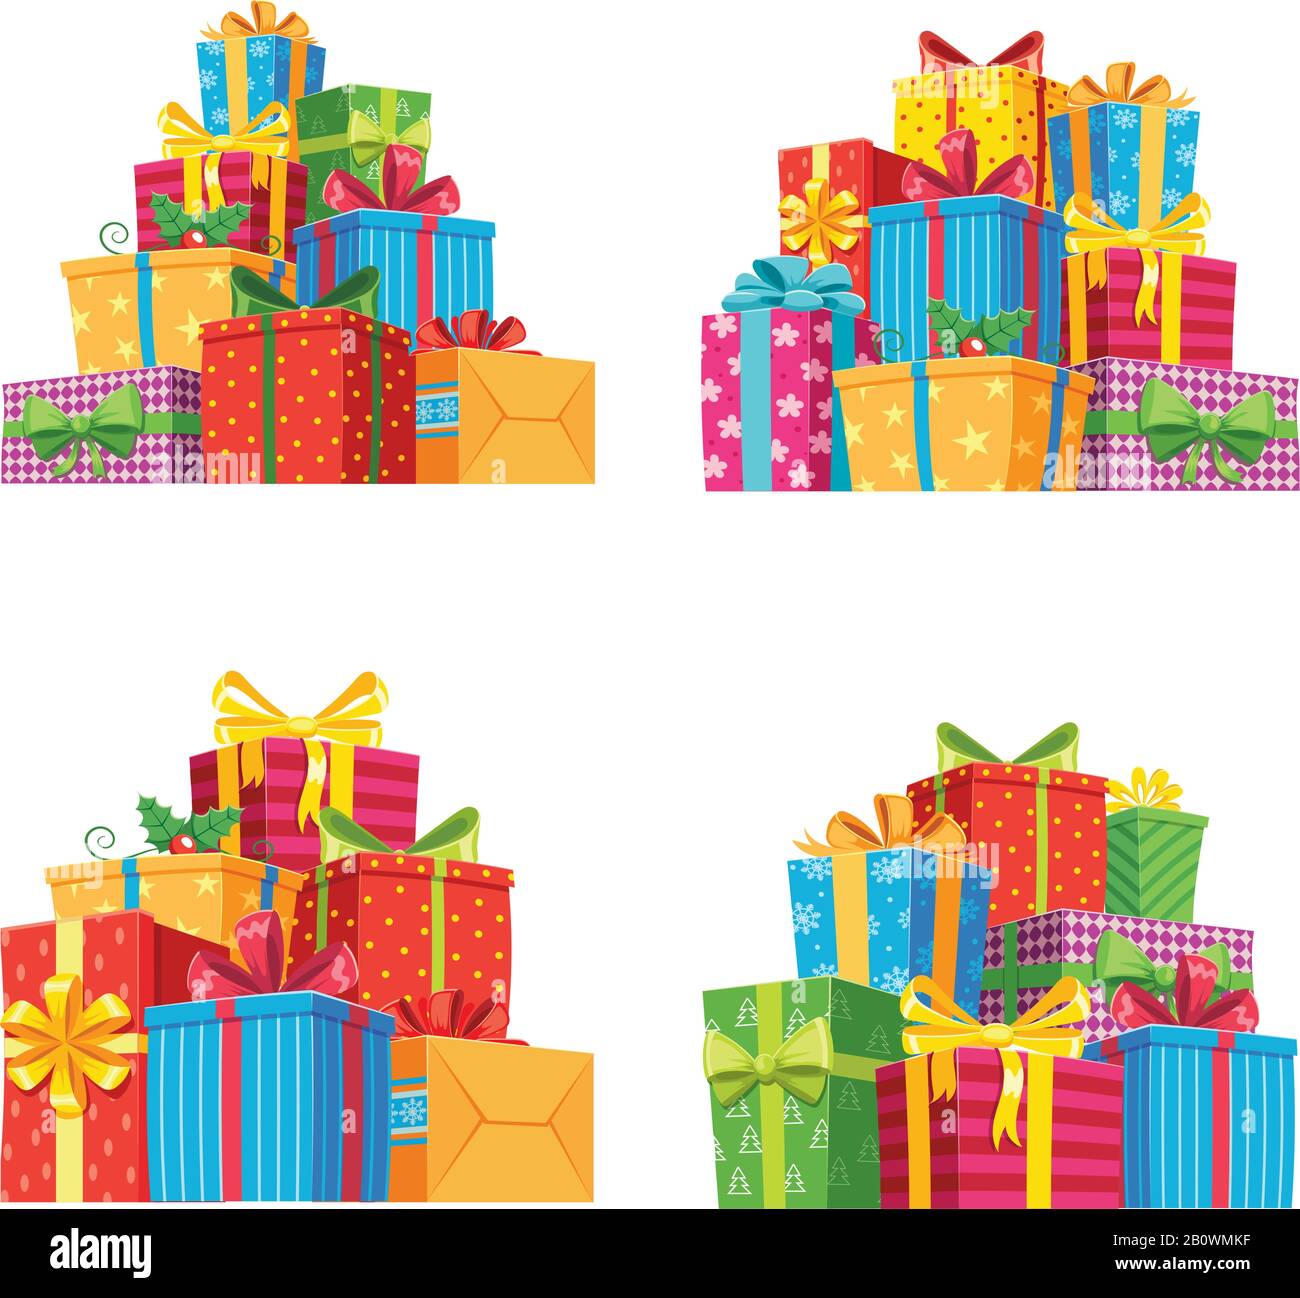 Weihnachtsgeschenke in Geschenkschachteln. Geburtstagskasten, Weihnachtsgeschenke stapeln isolierte Vektorgrafiken Stock Vektor